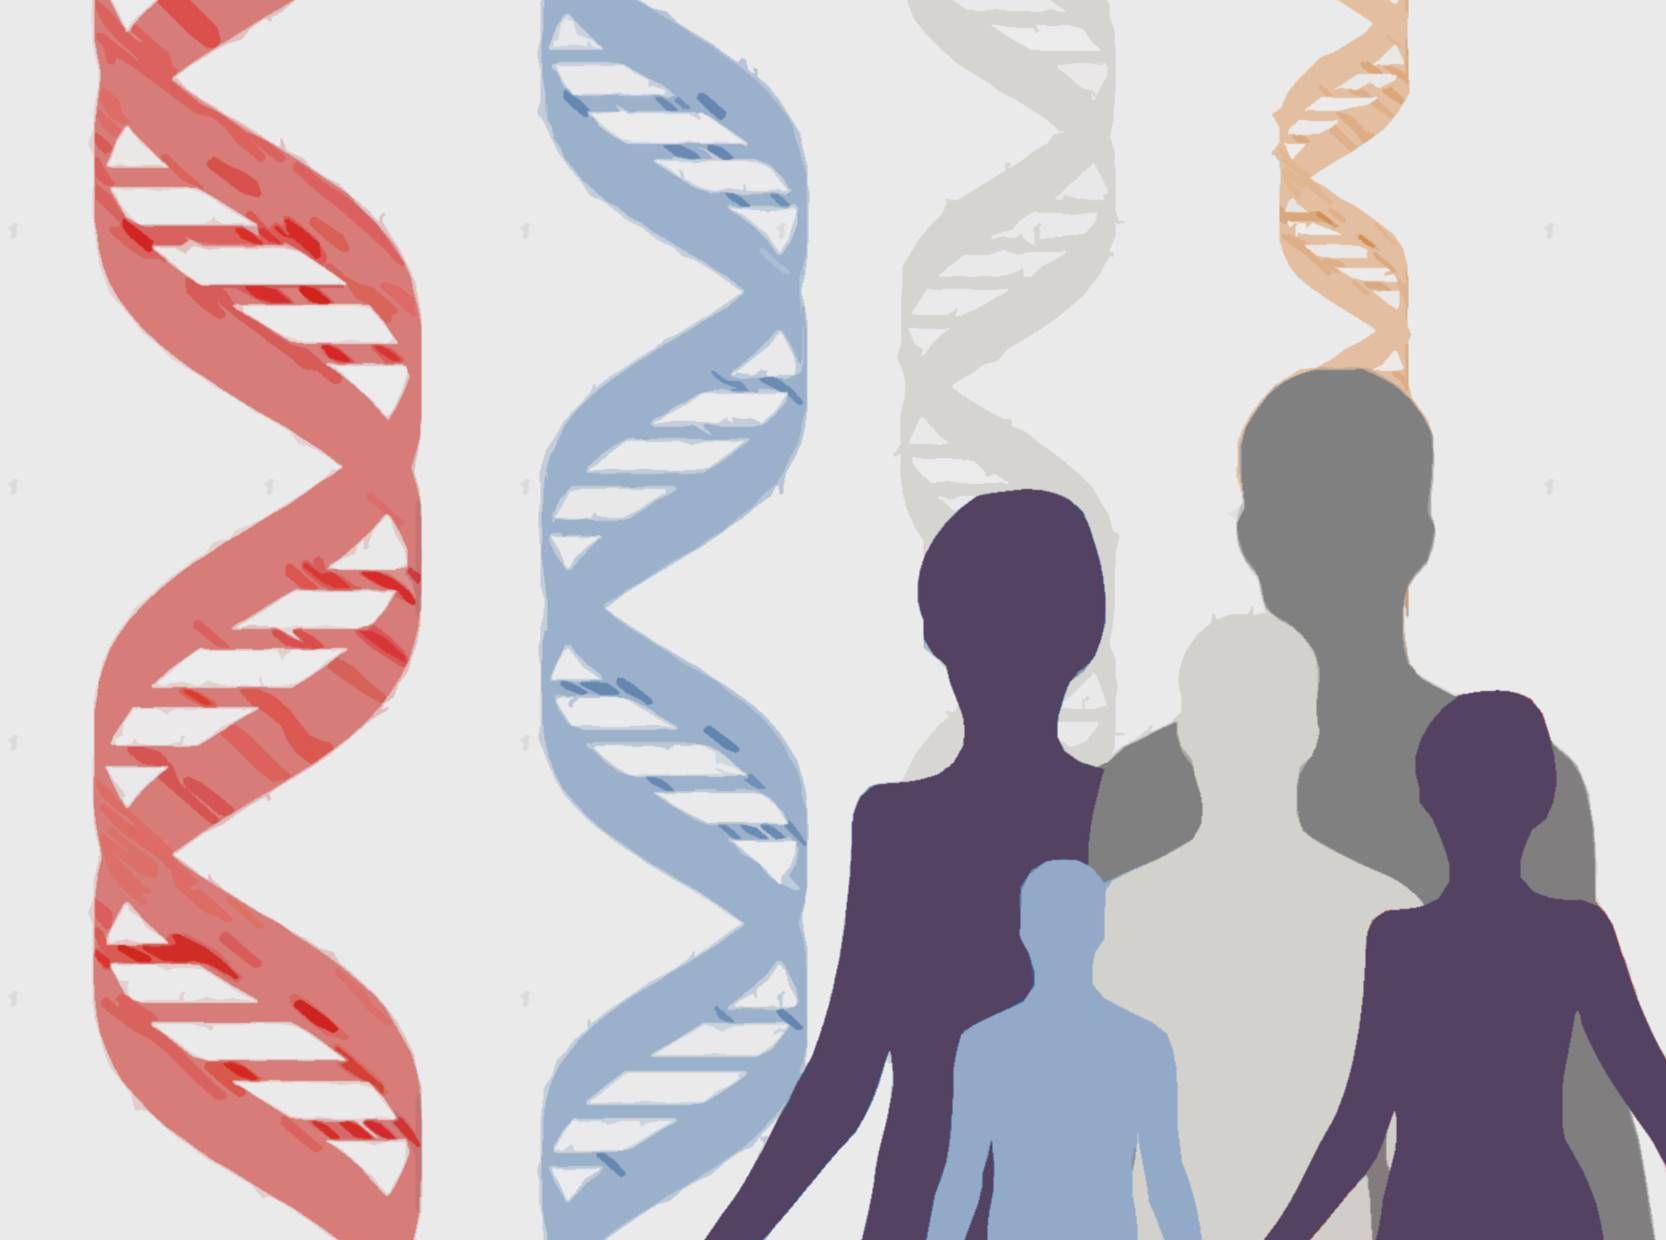 [:es]El problema de la falta de diversidad en los estudios genéticos[:]